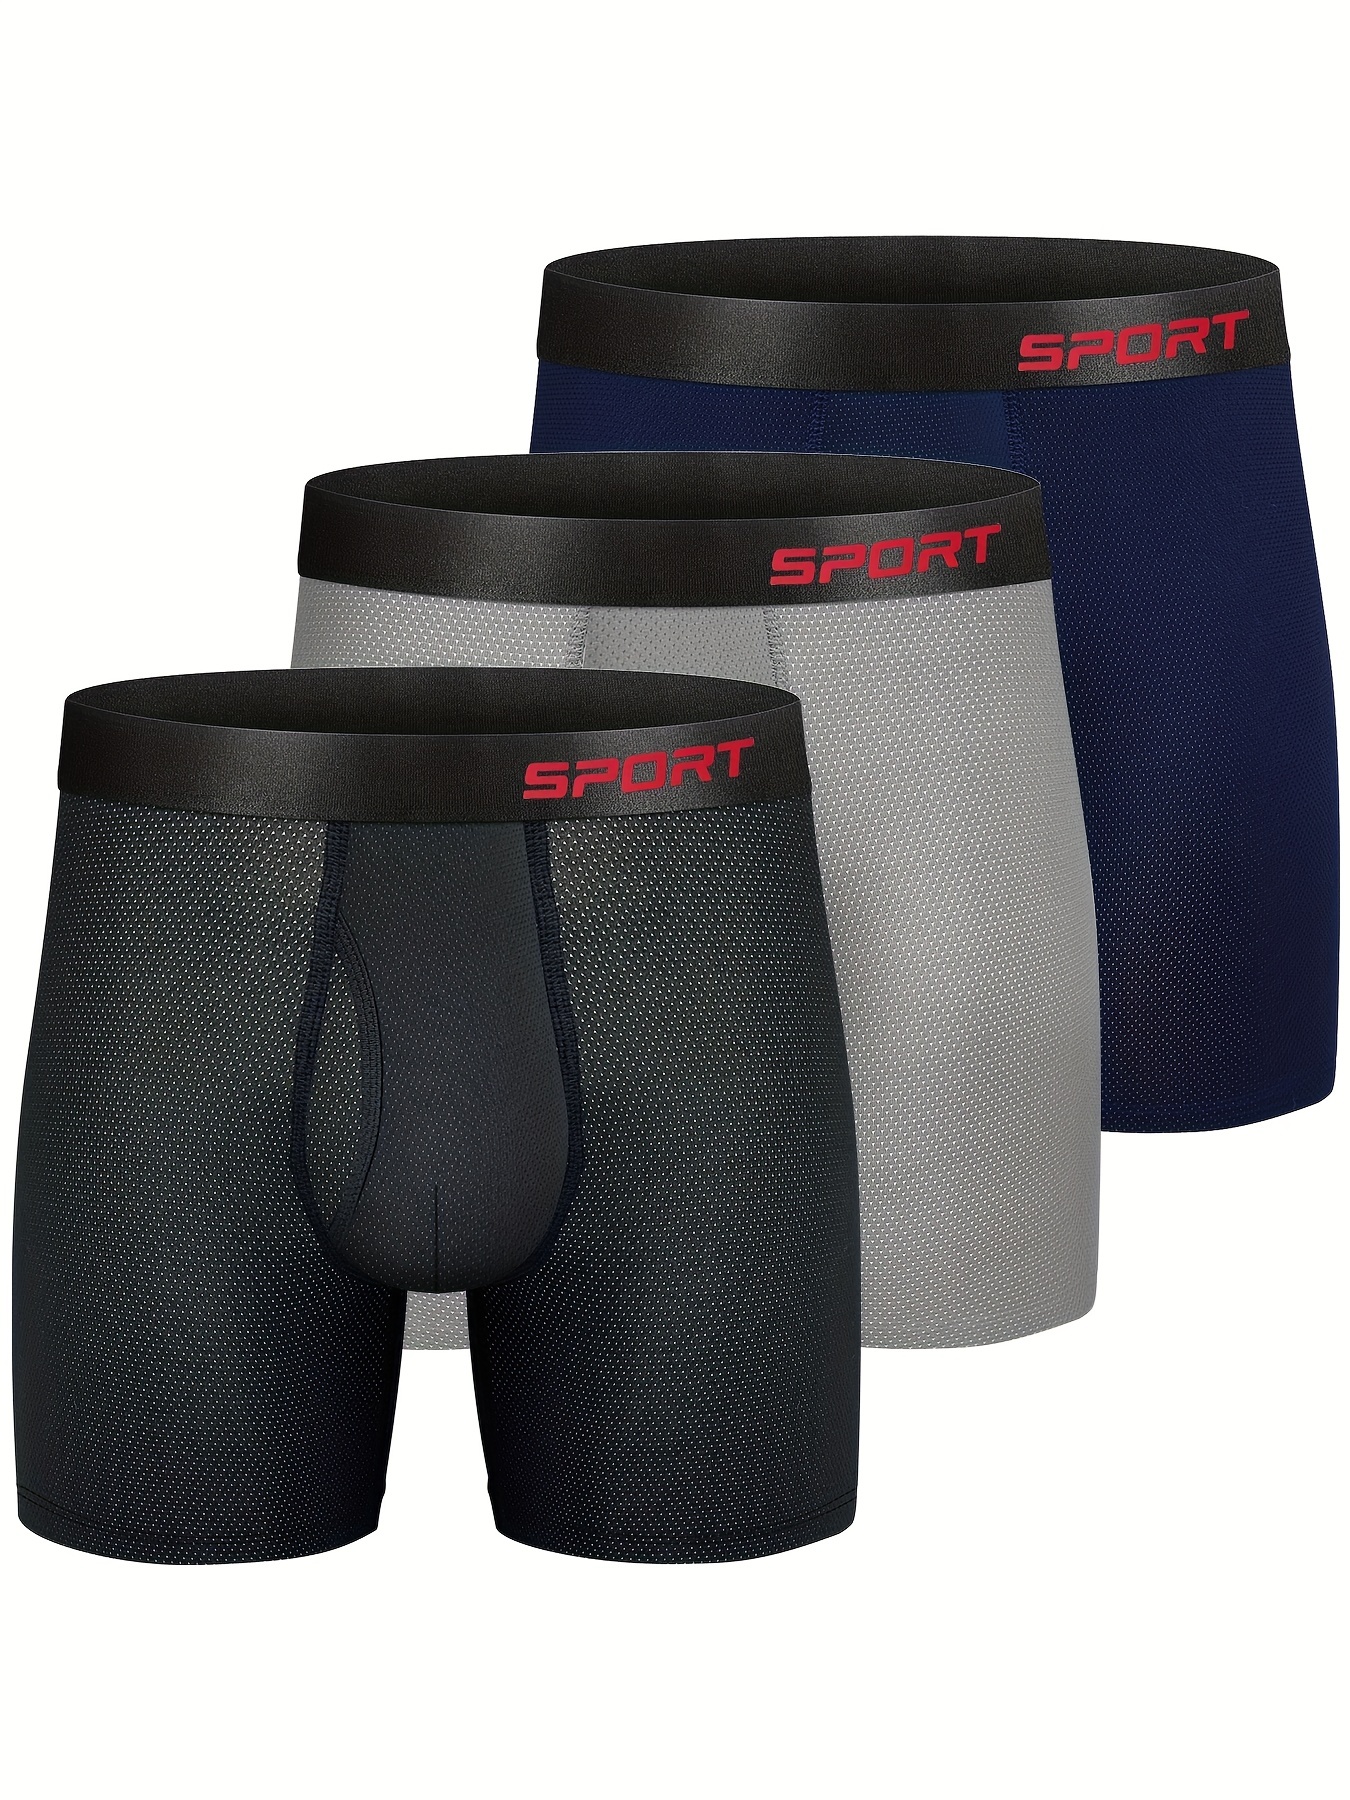 Men S Spyder Underwearmodal Boxer Shorts For Men - Breathable